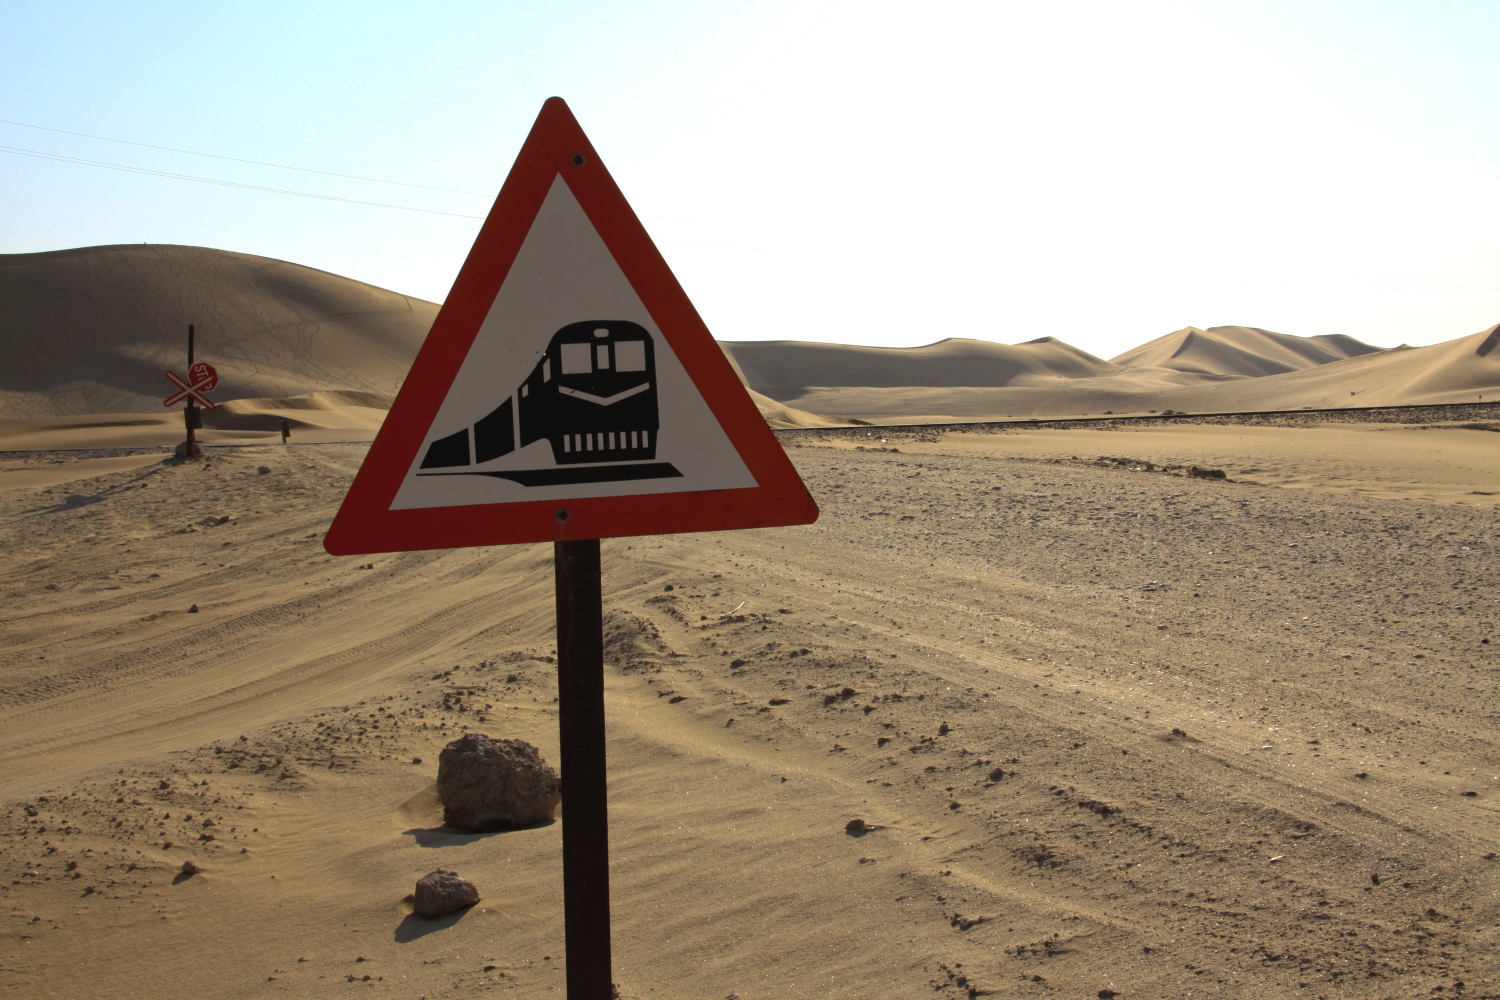 Wüstenbahn